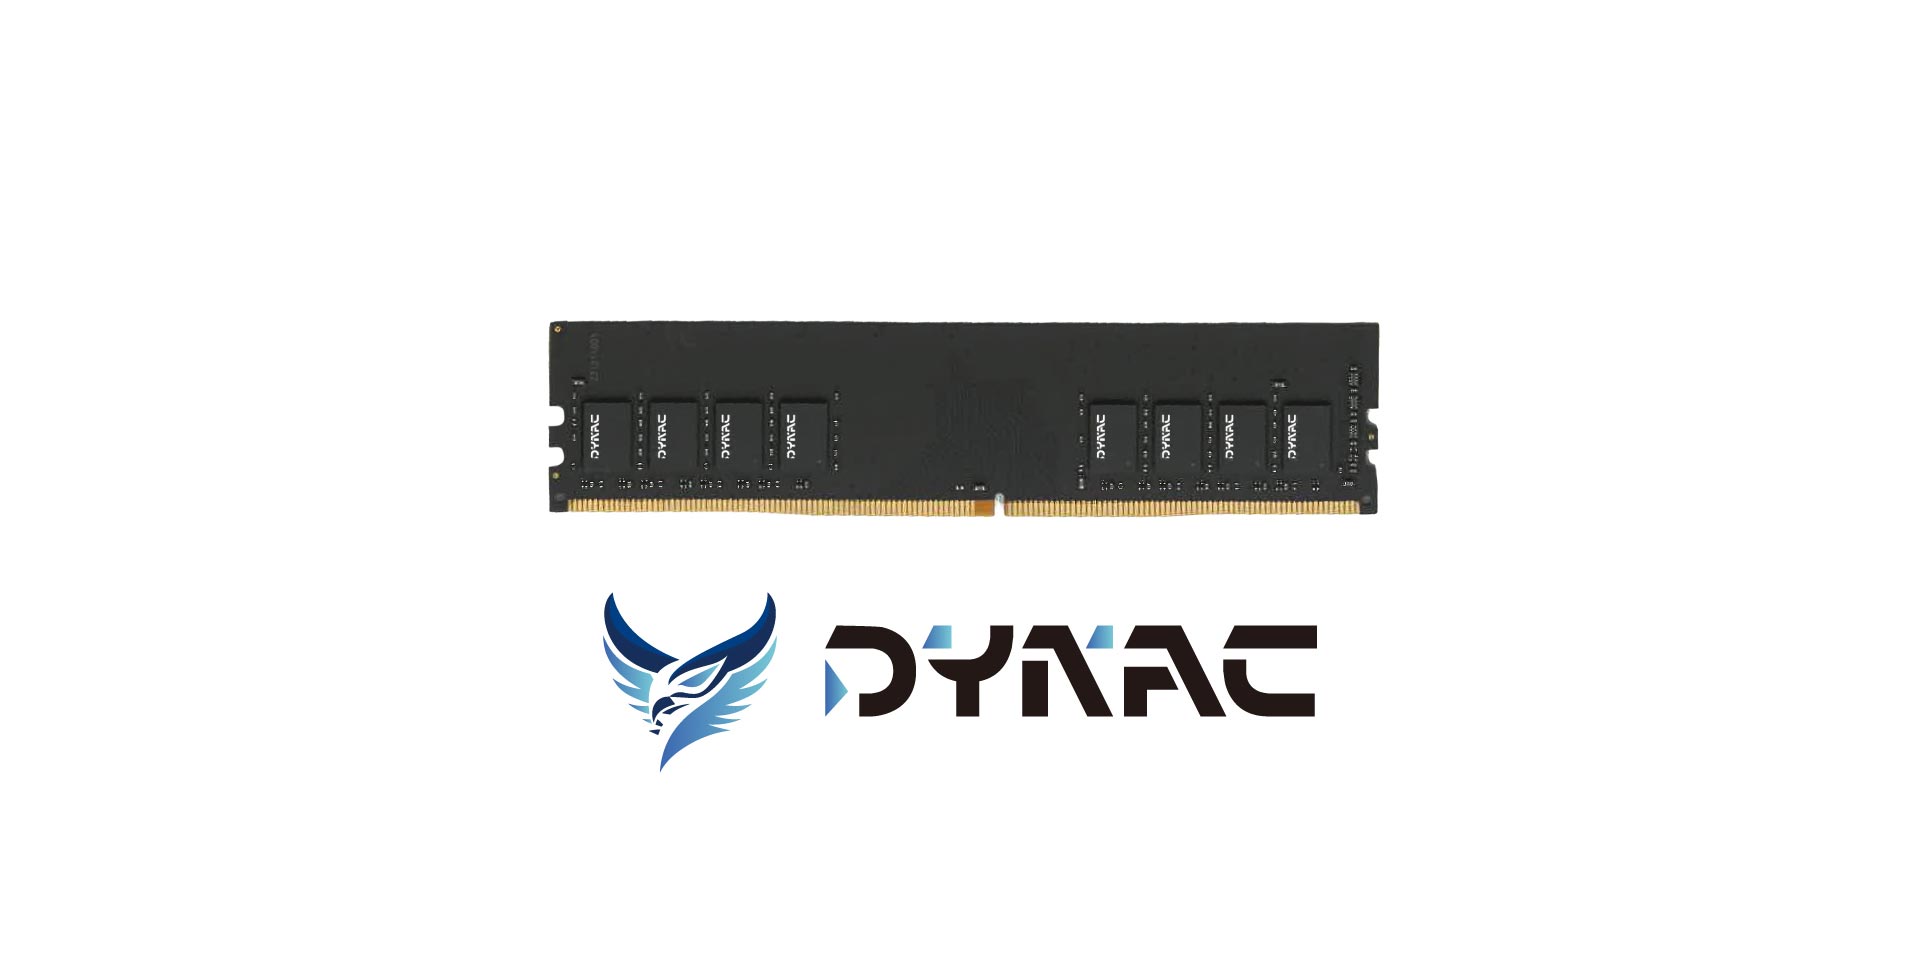 DYNACARD RAM KIT 16GB (2*8GB) DDR4 UDIMM 3600MHz